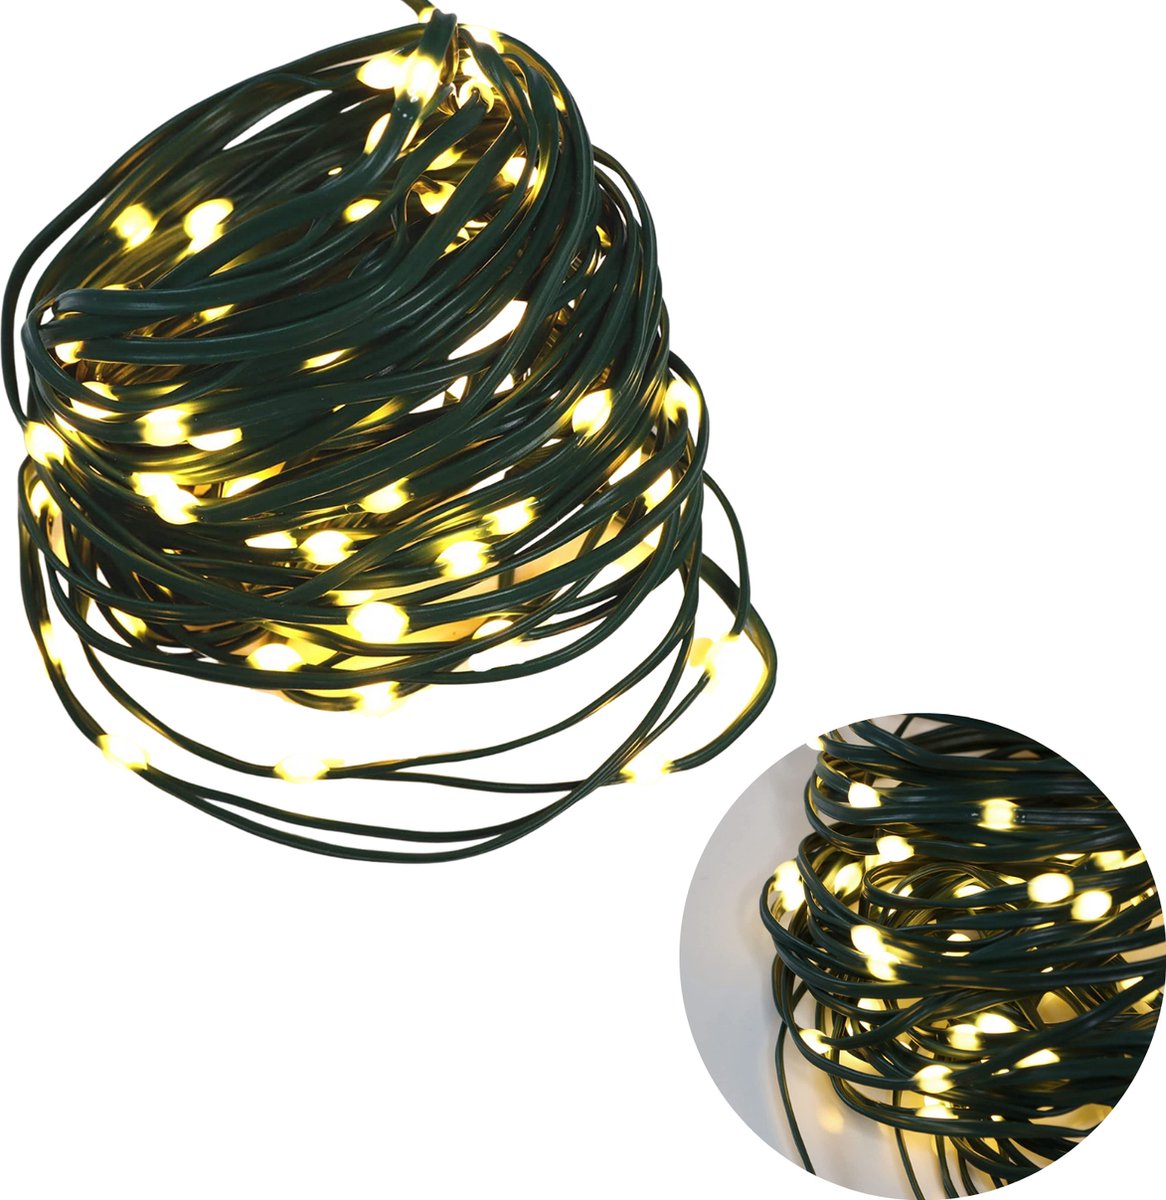 Cheqo® Draadverlichting - Kerstverlichting - Kerstlampjes - Kerstboomverlichting - Lampjes Slinger - Lichtsnoer - LED Lampjes voor Binnen en Buiten - 13.5 Meter - 180 LED - Extra Warm Wit